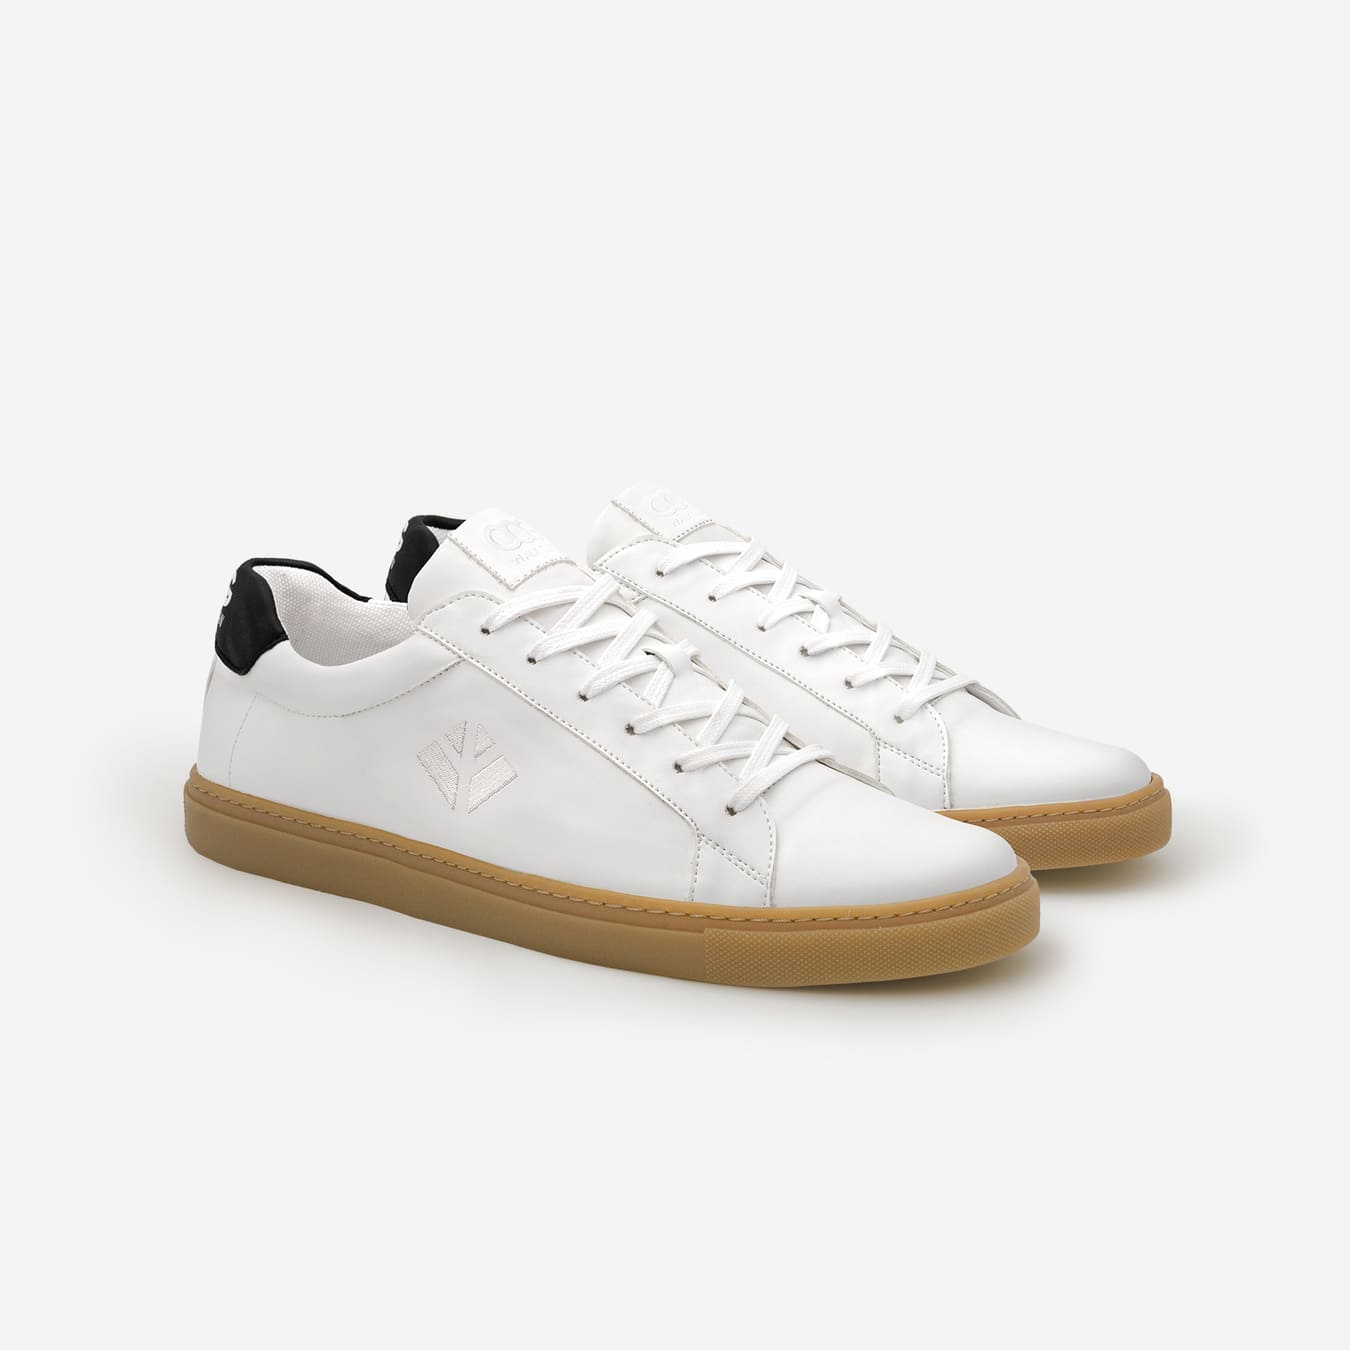 Sneakers baskets basses végan et écologique blanc noir - Winton Cog